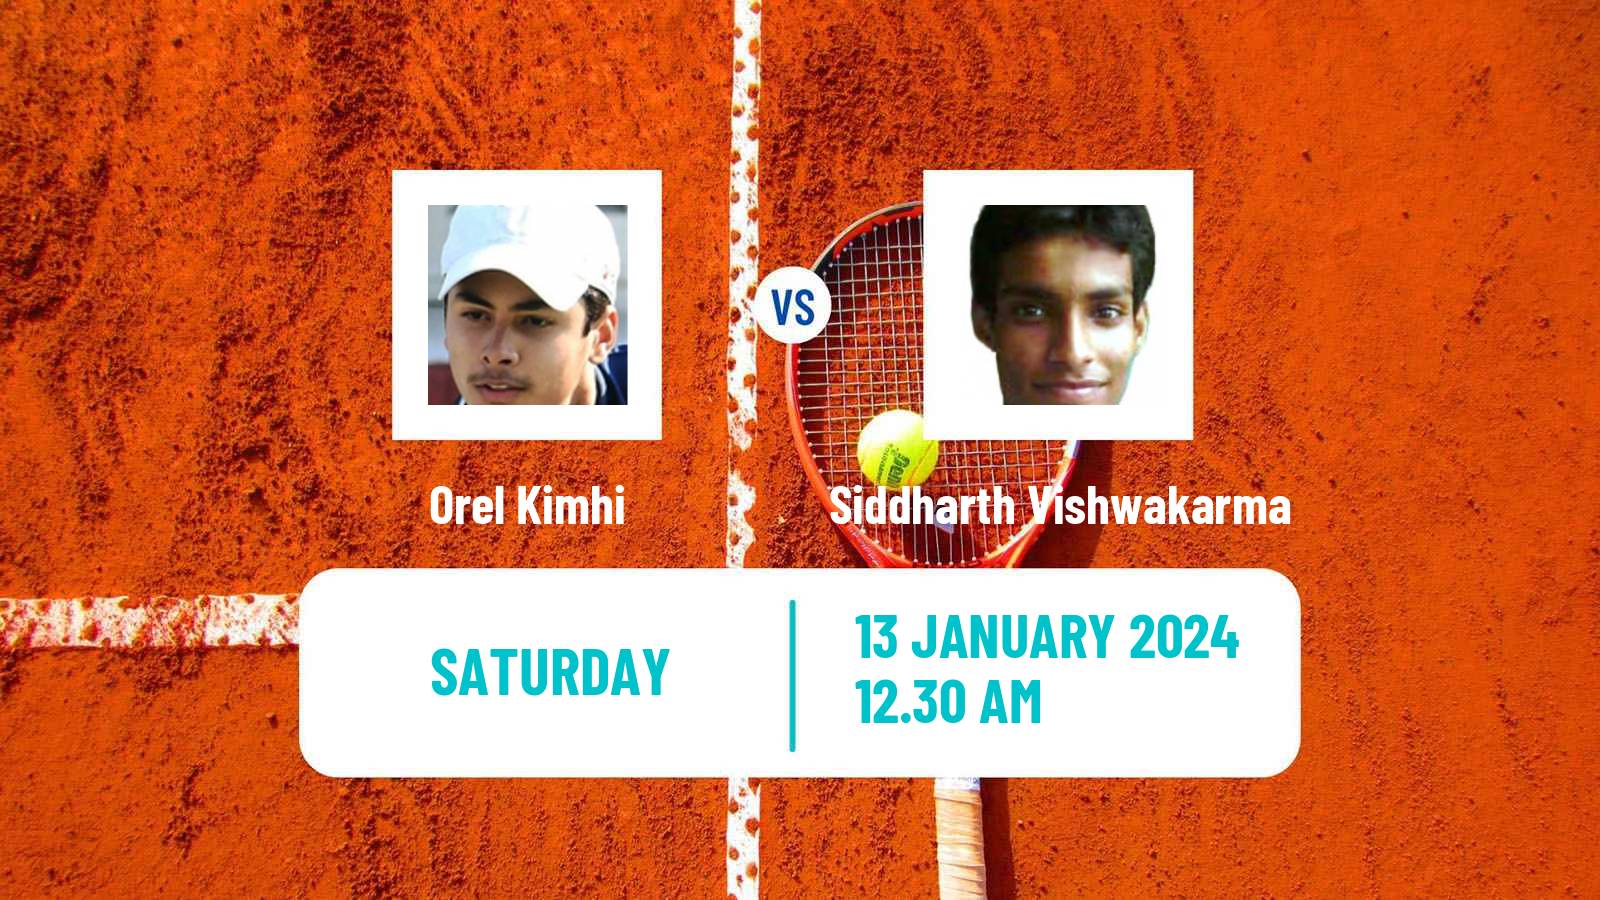 Tennis ITF M25 Mandya Men Orel Kimhi - Siddharth Vishwakarma